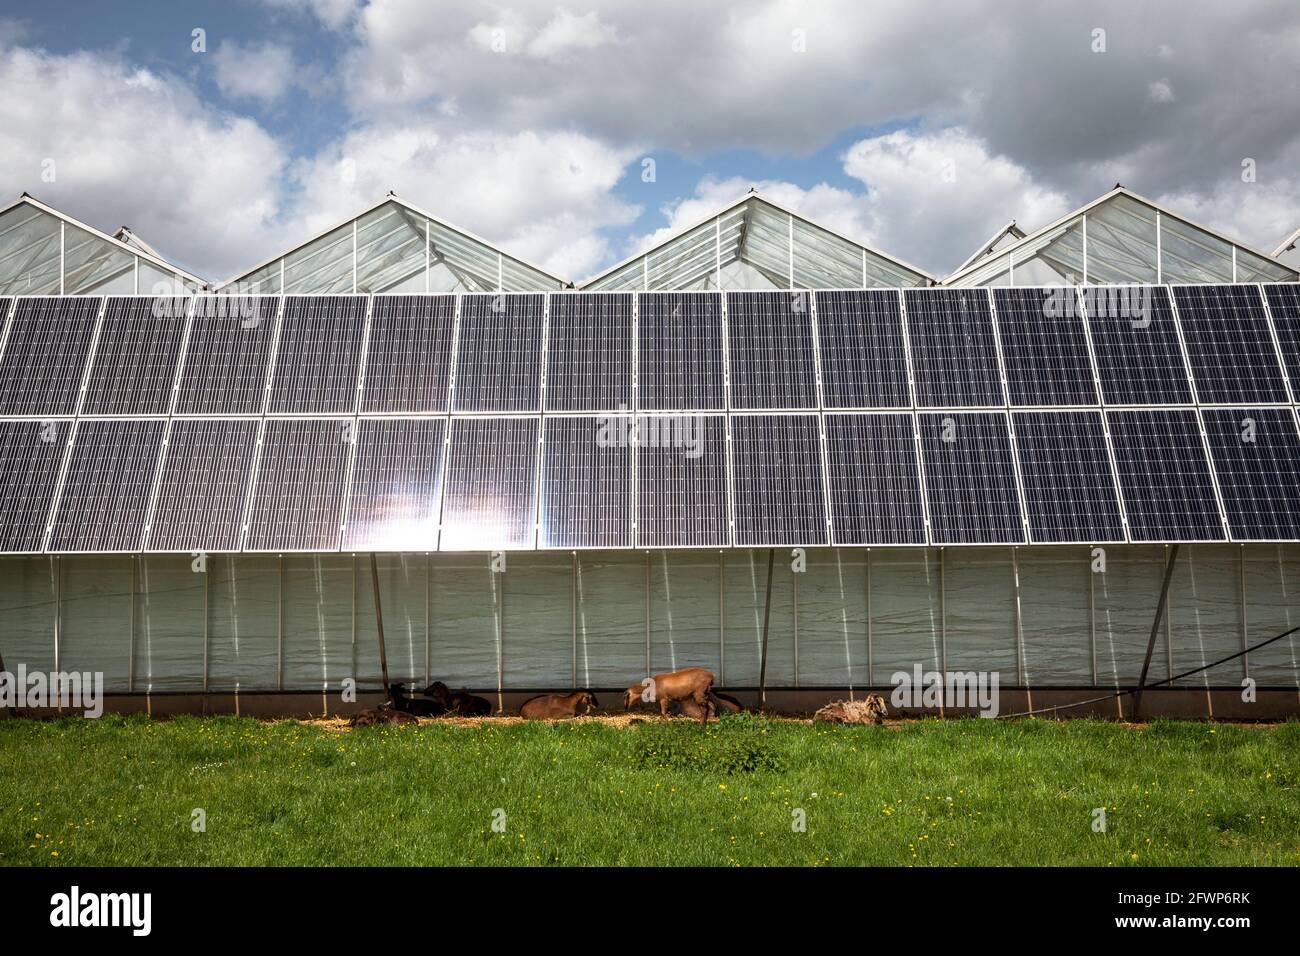 Modules photovoltaïques, panneaux solaires sur les serres d'un jardin d'enfants à Pulheim-Sinnersdorf, les chèvres se trouvent à l'ombre, Rhénanie-du-Nord-Westphalie, Allemagne. Banque D'Images